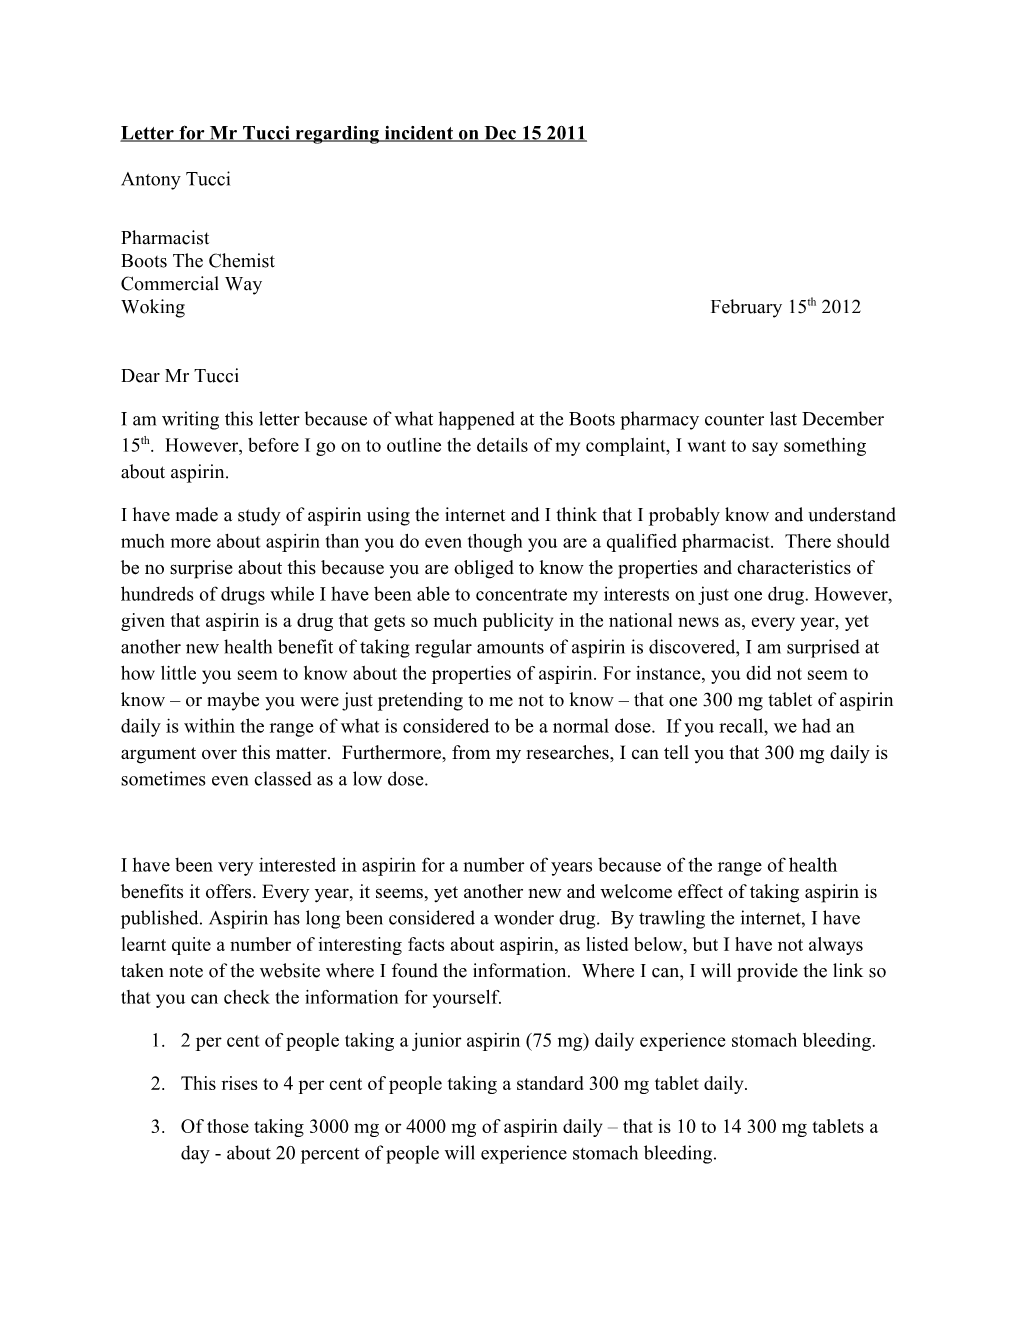 Letter for Mr Tucci Regarding Incident on Dec 15 2011